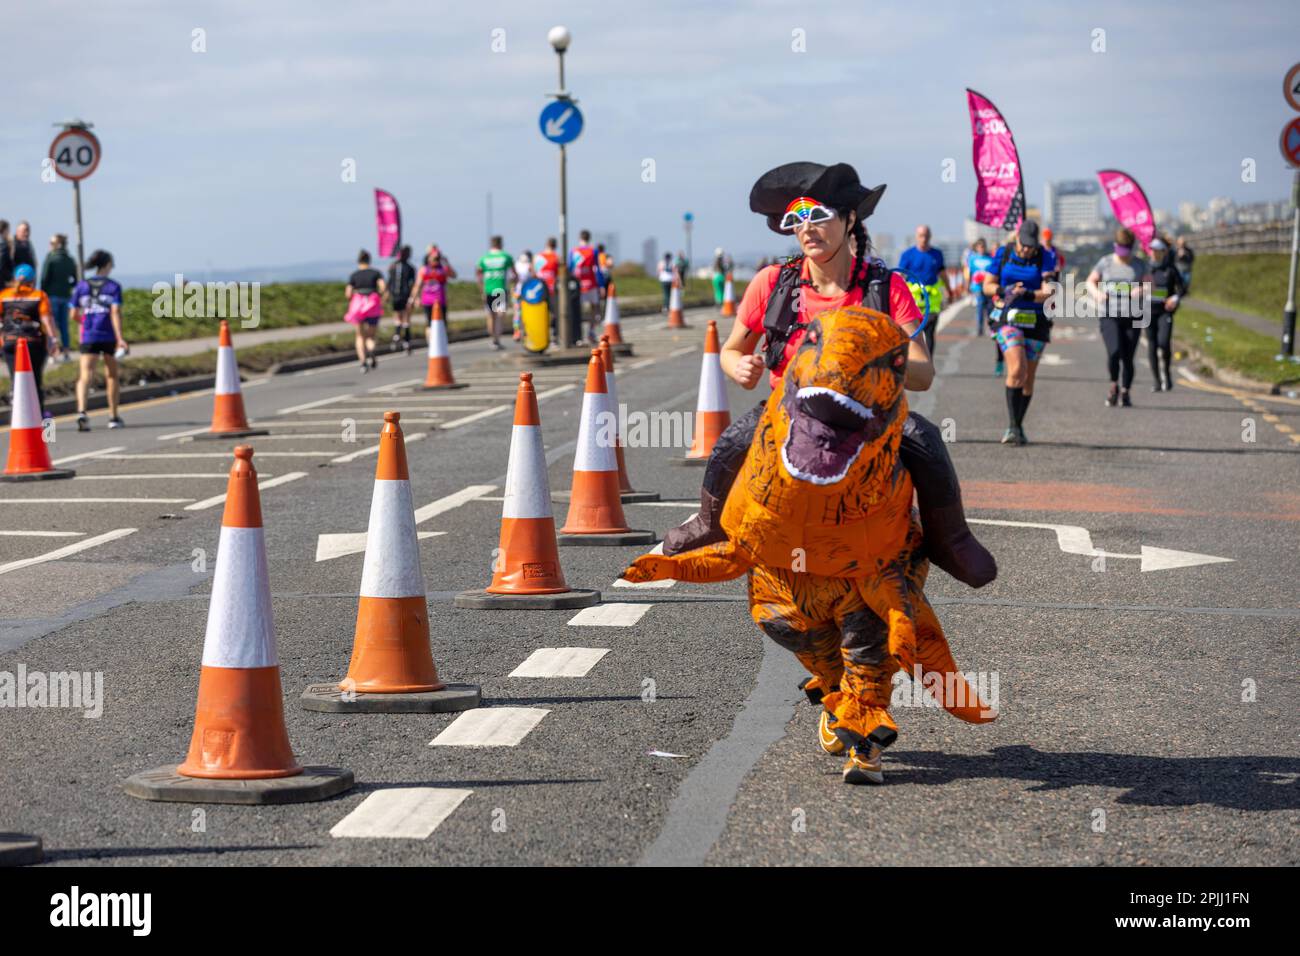 Brighton, Großbritannien, 02. 04. 2023, im Jahr 4pm hatten mehr als 7.000 Teilnehmer den legendären Brighton Marathon absolviert, der von begeisterten Massen auf der 26,2 km langen Strecke angefeuert wurde. Die Veranstaltung umfasste eine neue Ziellinie bei Hove Rasen, die die Spannung der Veranstaltung noch steigerte. Insgesamt waren 130 Wohltätigkeitsorganisationen bei der Veranstaltung vertreten. Dieses Jahr wurde es erstmals von London Marathon Events (LME) organisiert Stockfoto